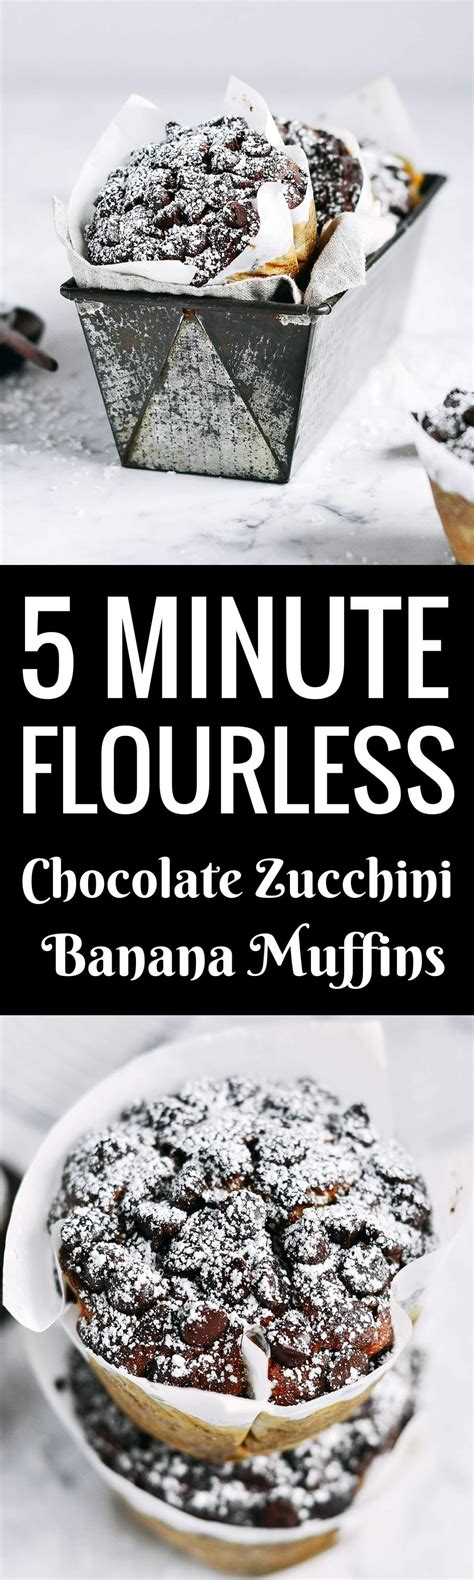 Gluten Free Banana Muffins Recipe Flourless Banana Muffins Banana